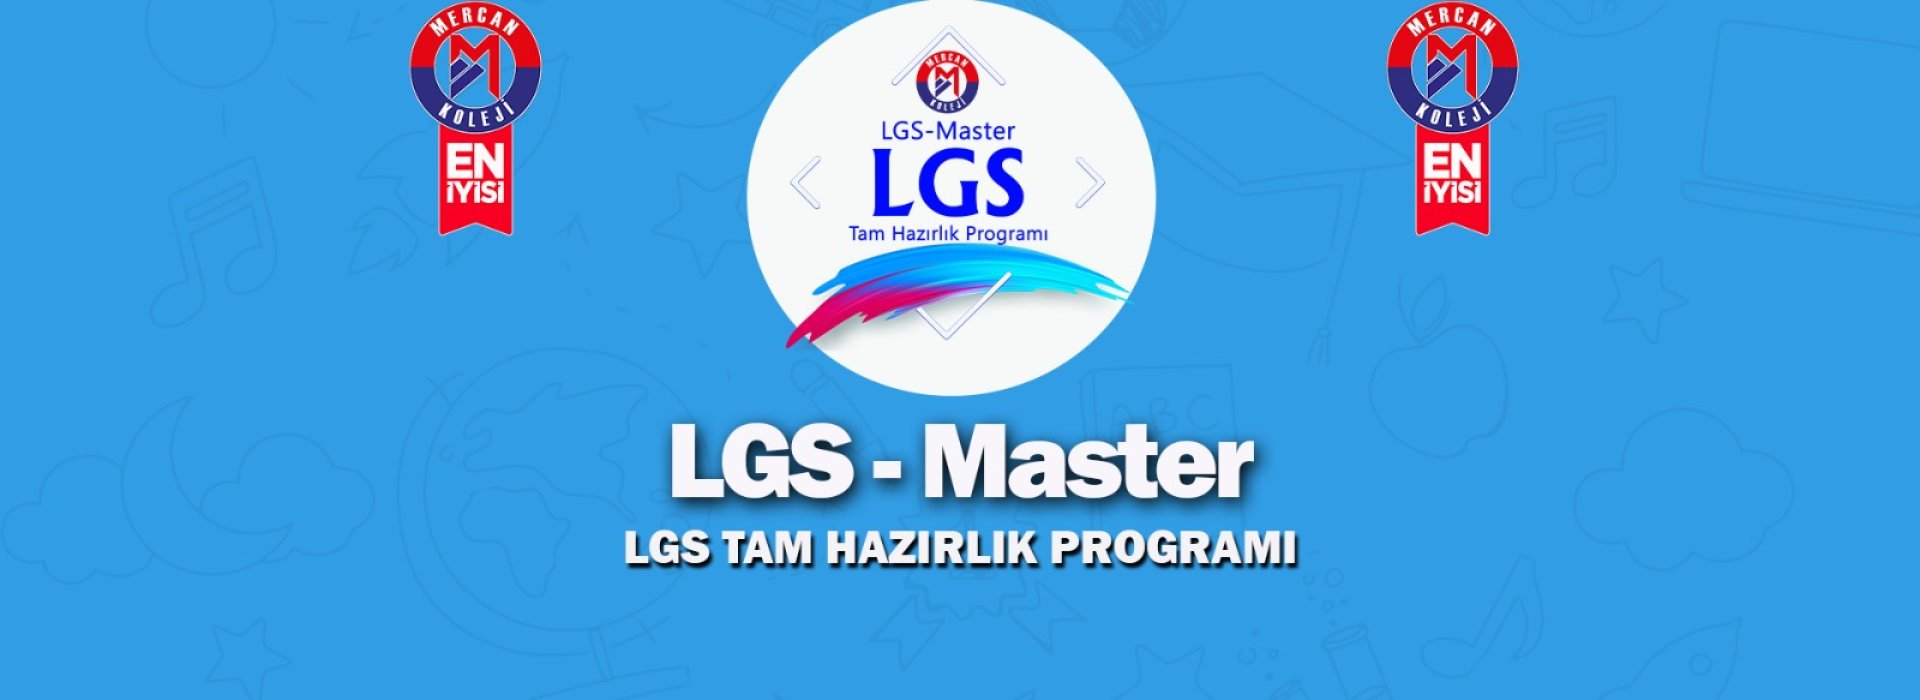 LGS Master LGS tam hazırlık programı Mercan Koleji malatya kampüsü Türkiye, Malatya en iyi özel okul kolej Malatya en iyi İlkokul en iyi Ortaokul en iyi Lise